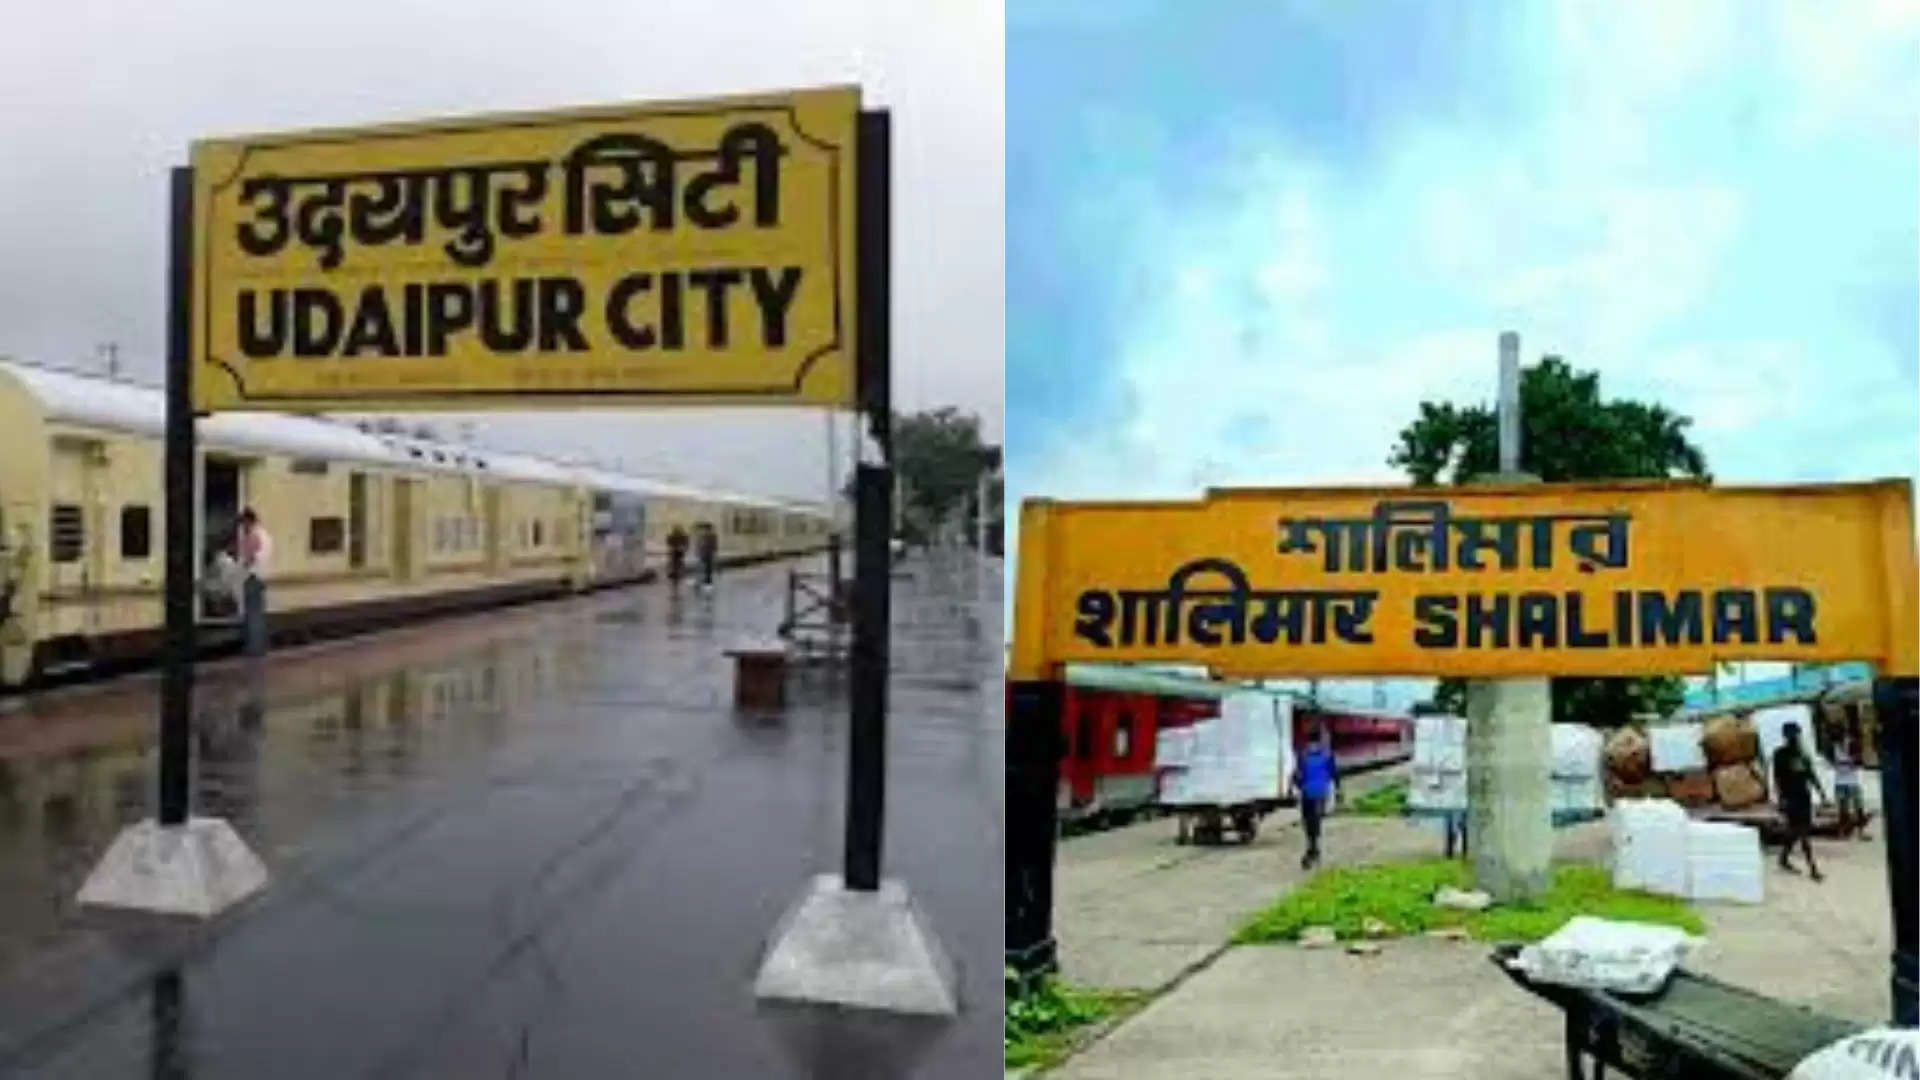 Udaipur City Shalimar Train